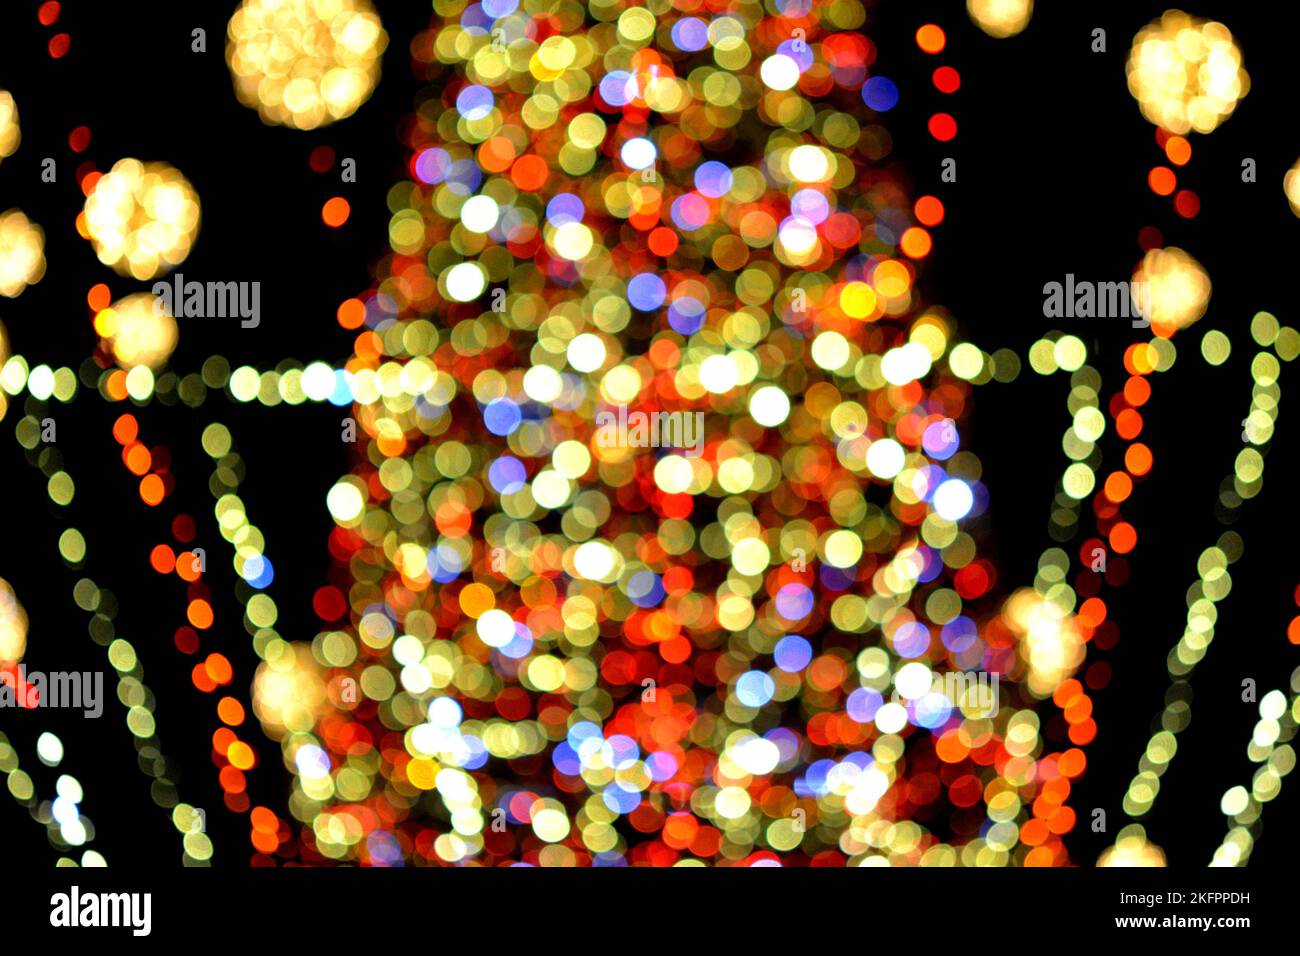 Weihnachtsbaum des neuen Jahres, geschmückt mit leuchtenden bunten Girlanden und Beleuchtung in der Nacht. Weihnachtsbaum mit blinkenden Lichtern. Unscharfer Hintergrund. Neujahr Weihnachtsferien. Stockfoto